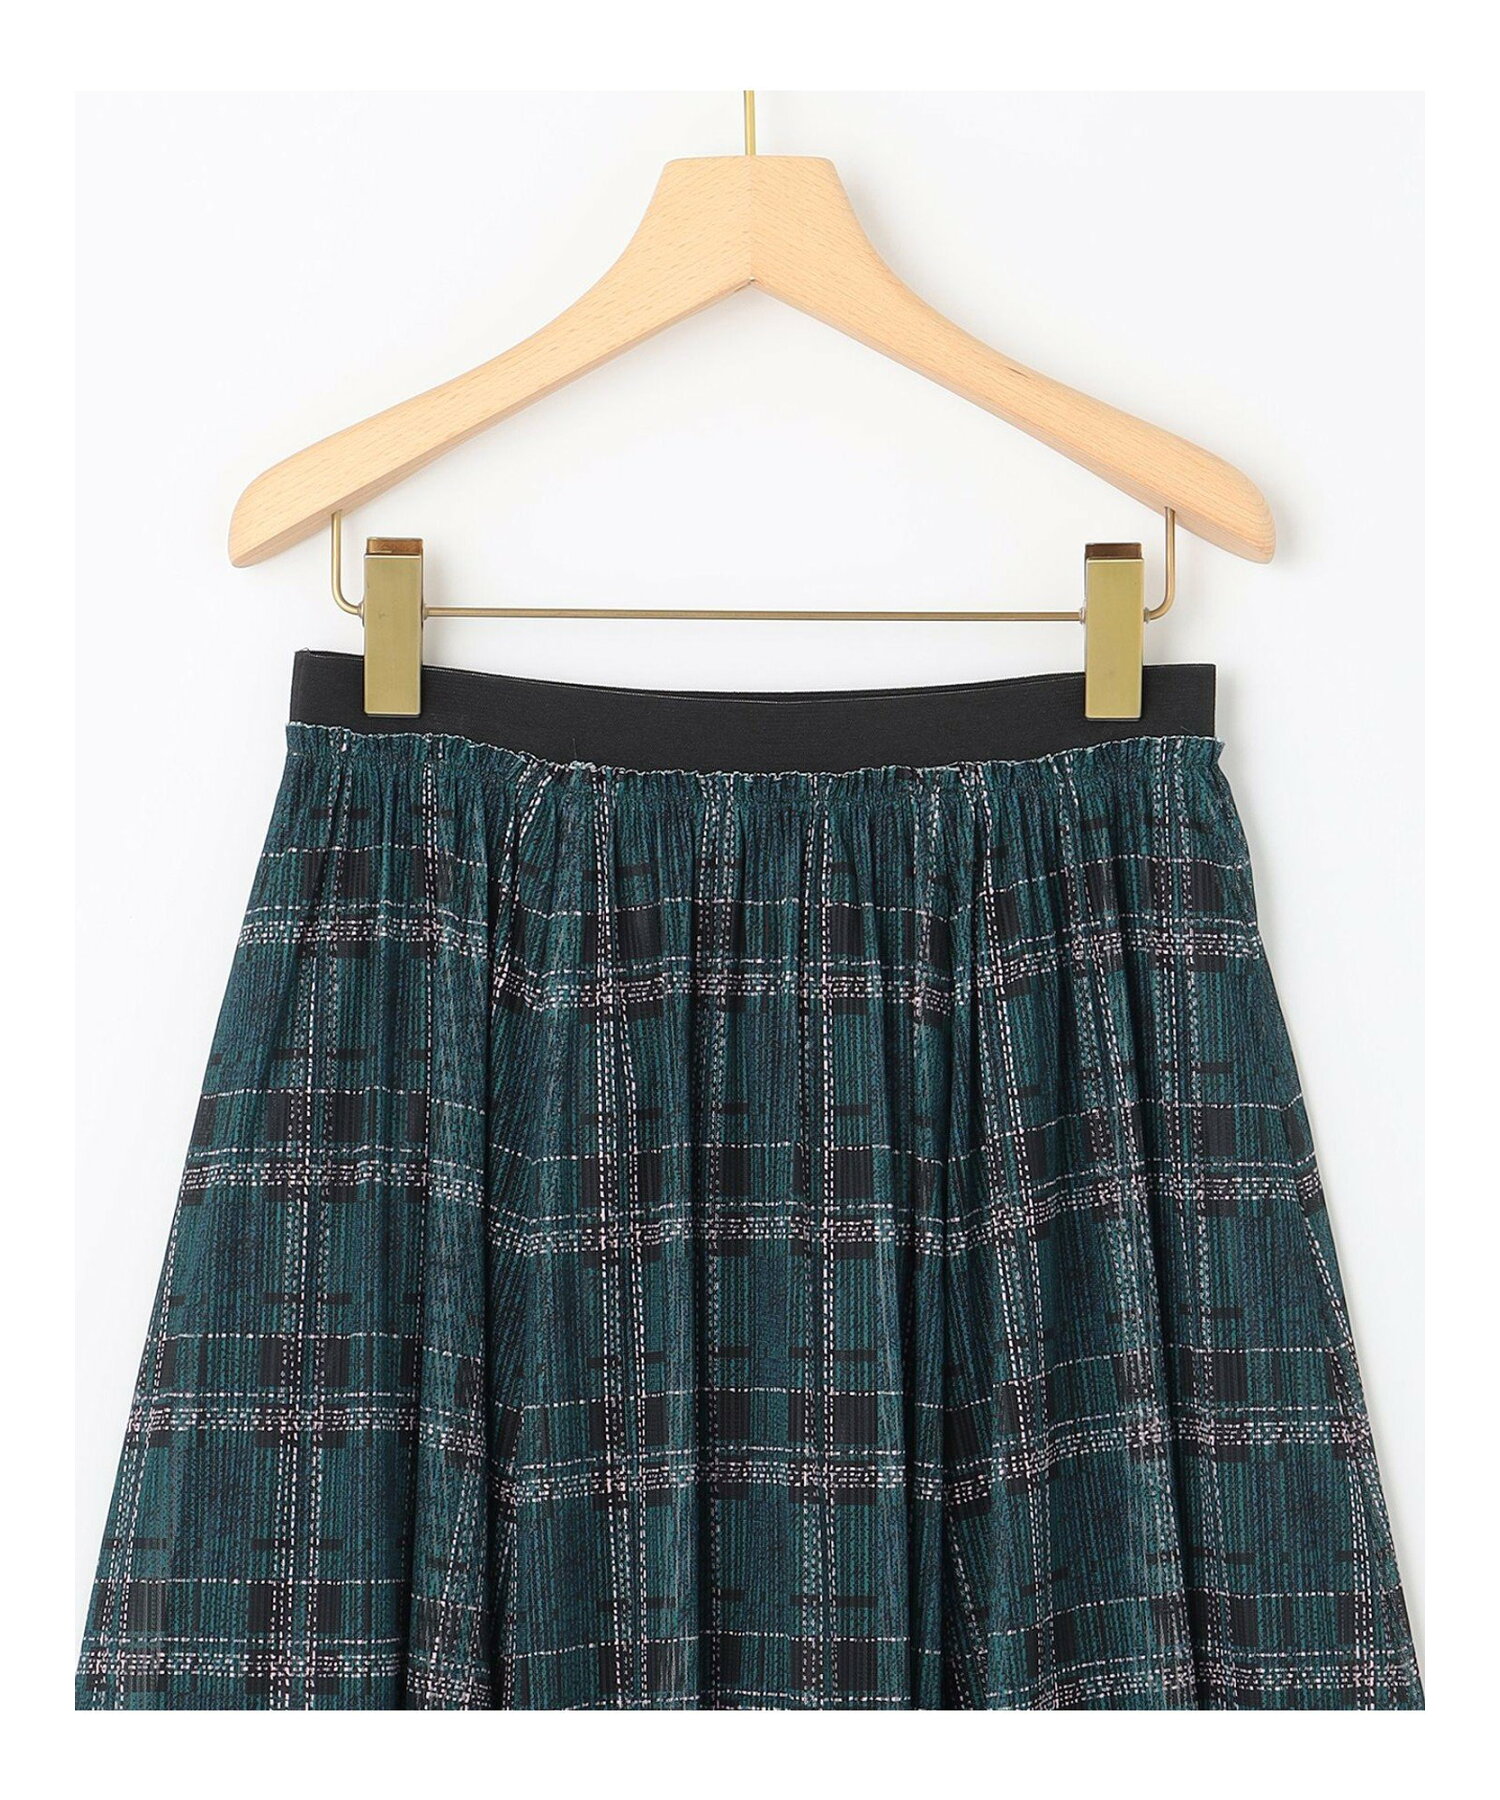 【WEB限定カラーあり】ツイードチェックチュールプリント スカート